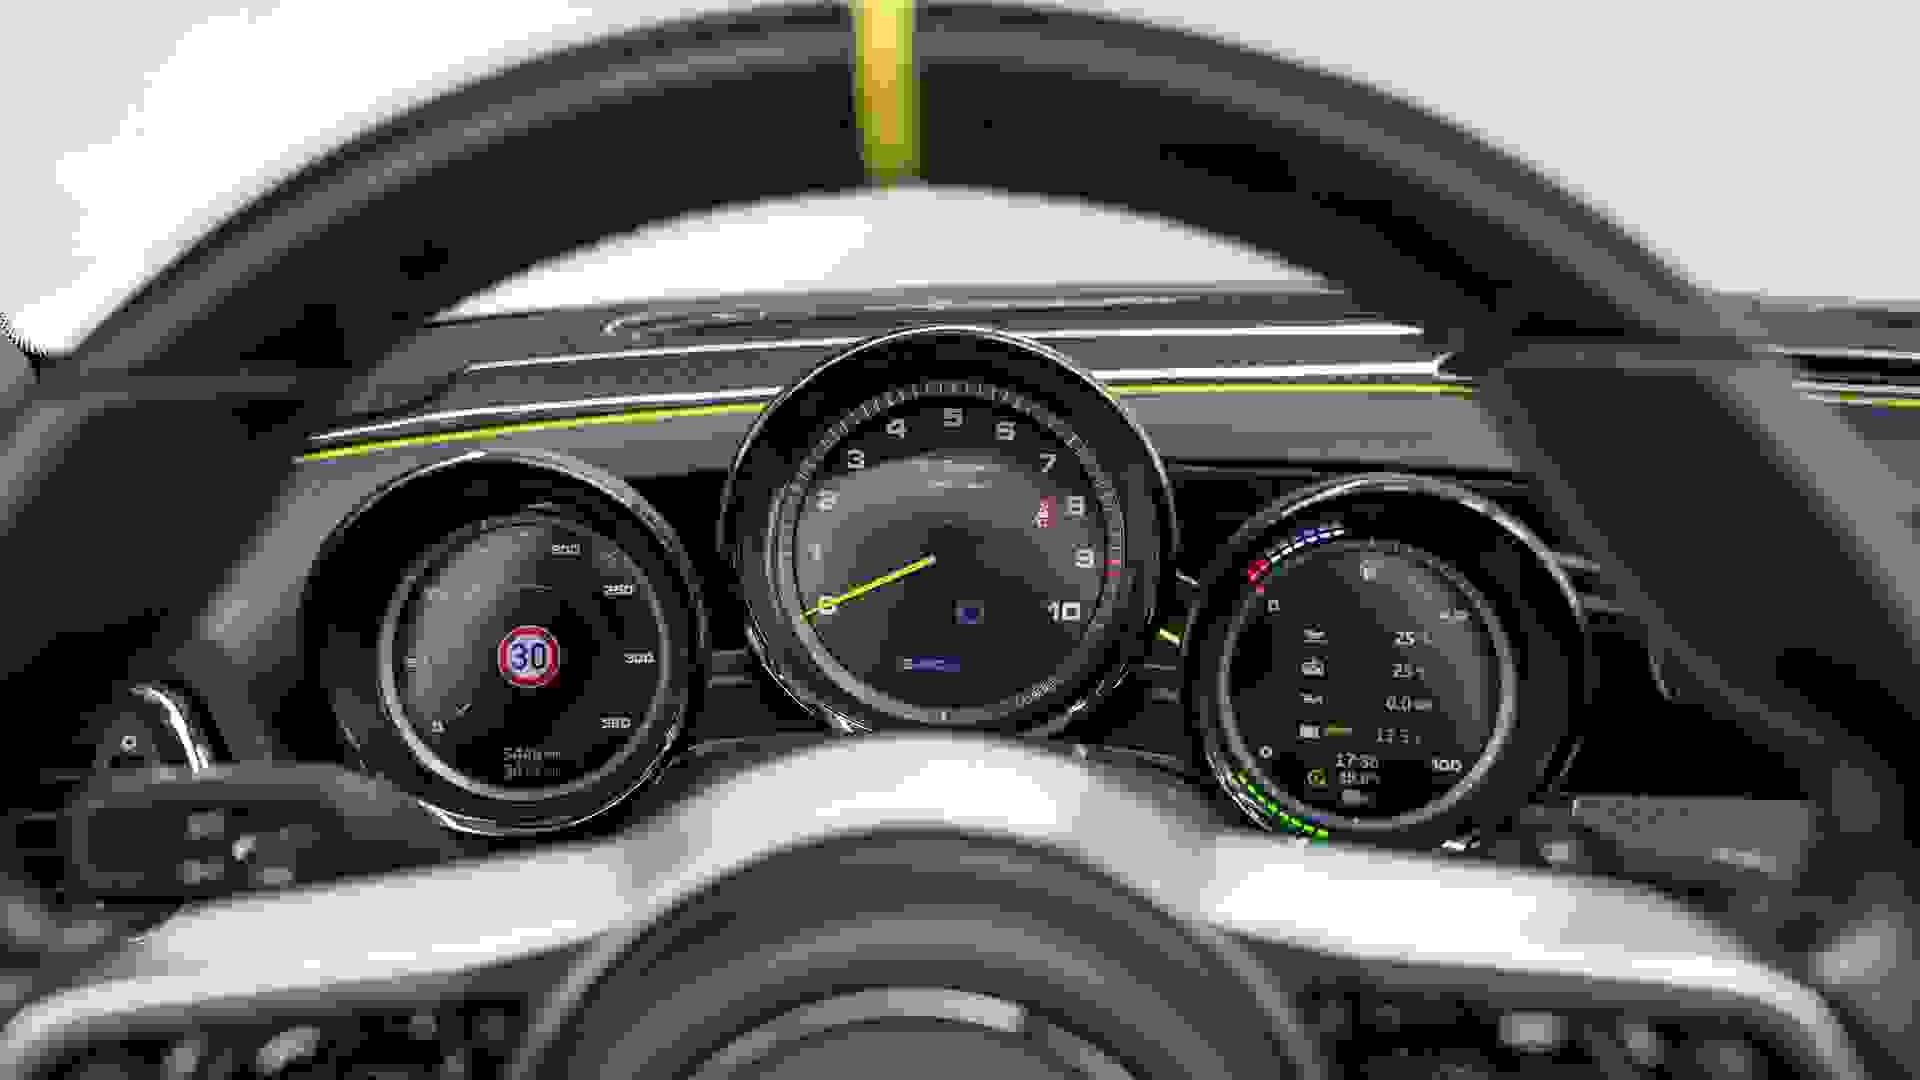 Porsche 918 Spyder Photo 1ae17d8f-e516-4ee1-b1f1-2f9c80f6a00e.jpg